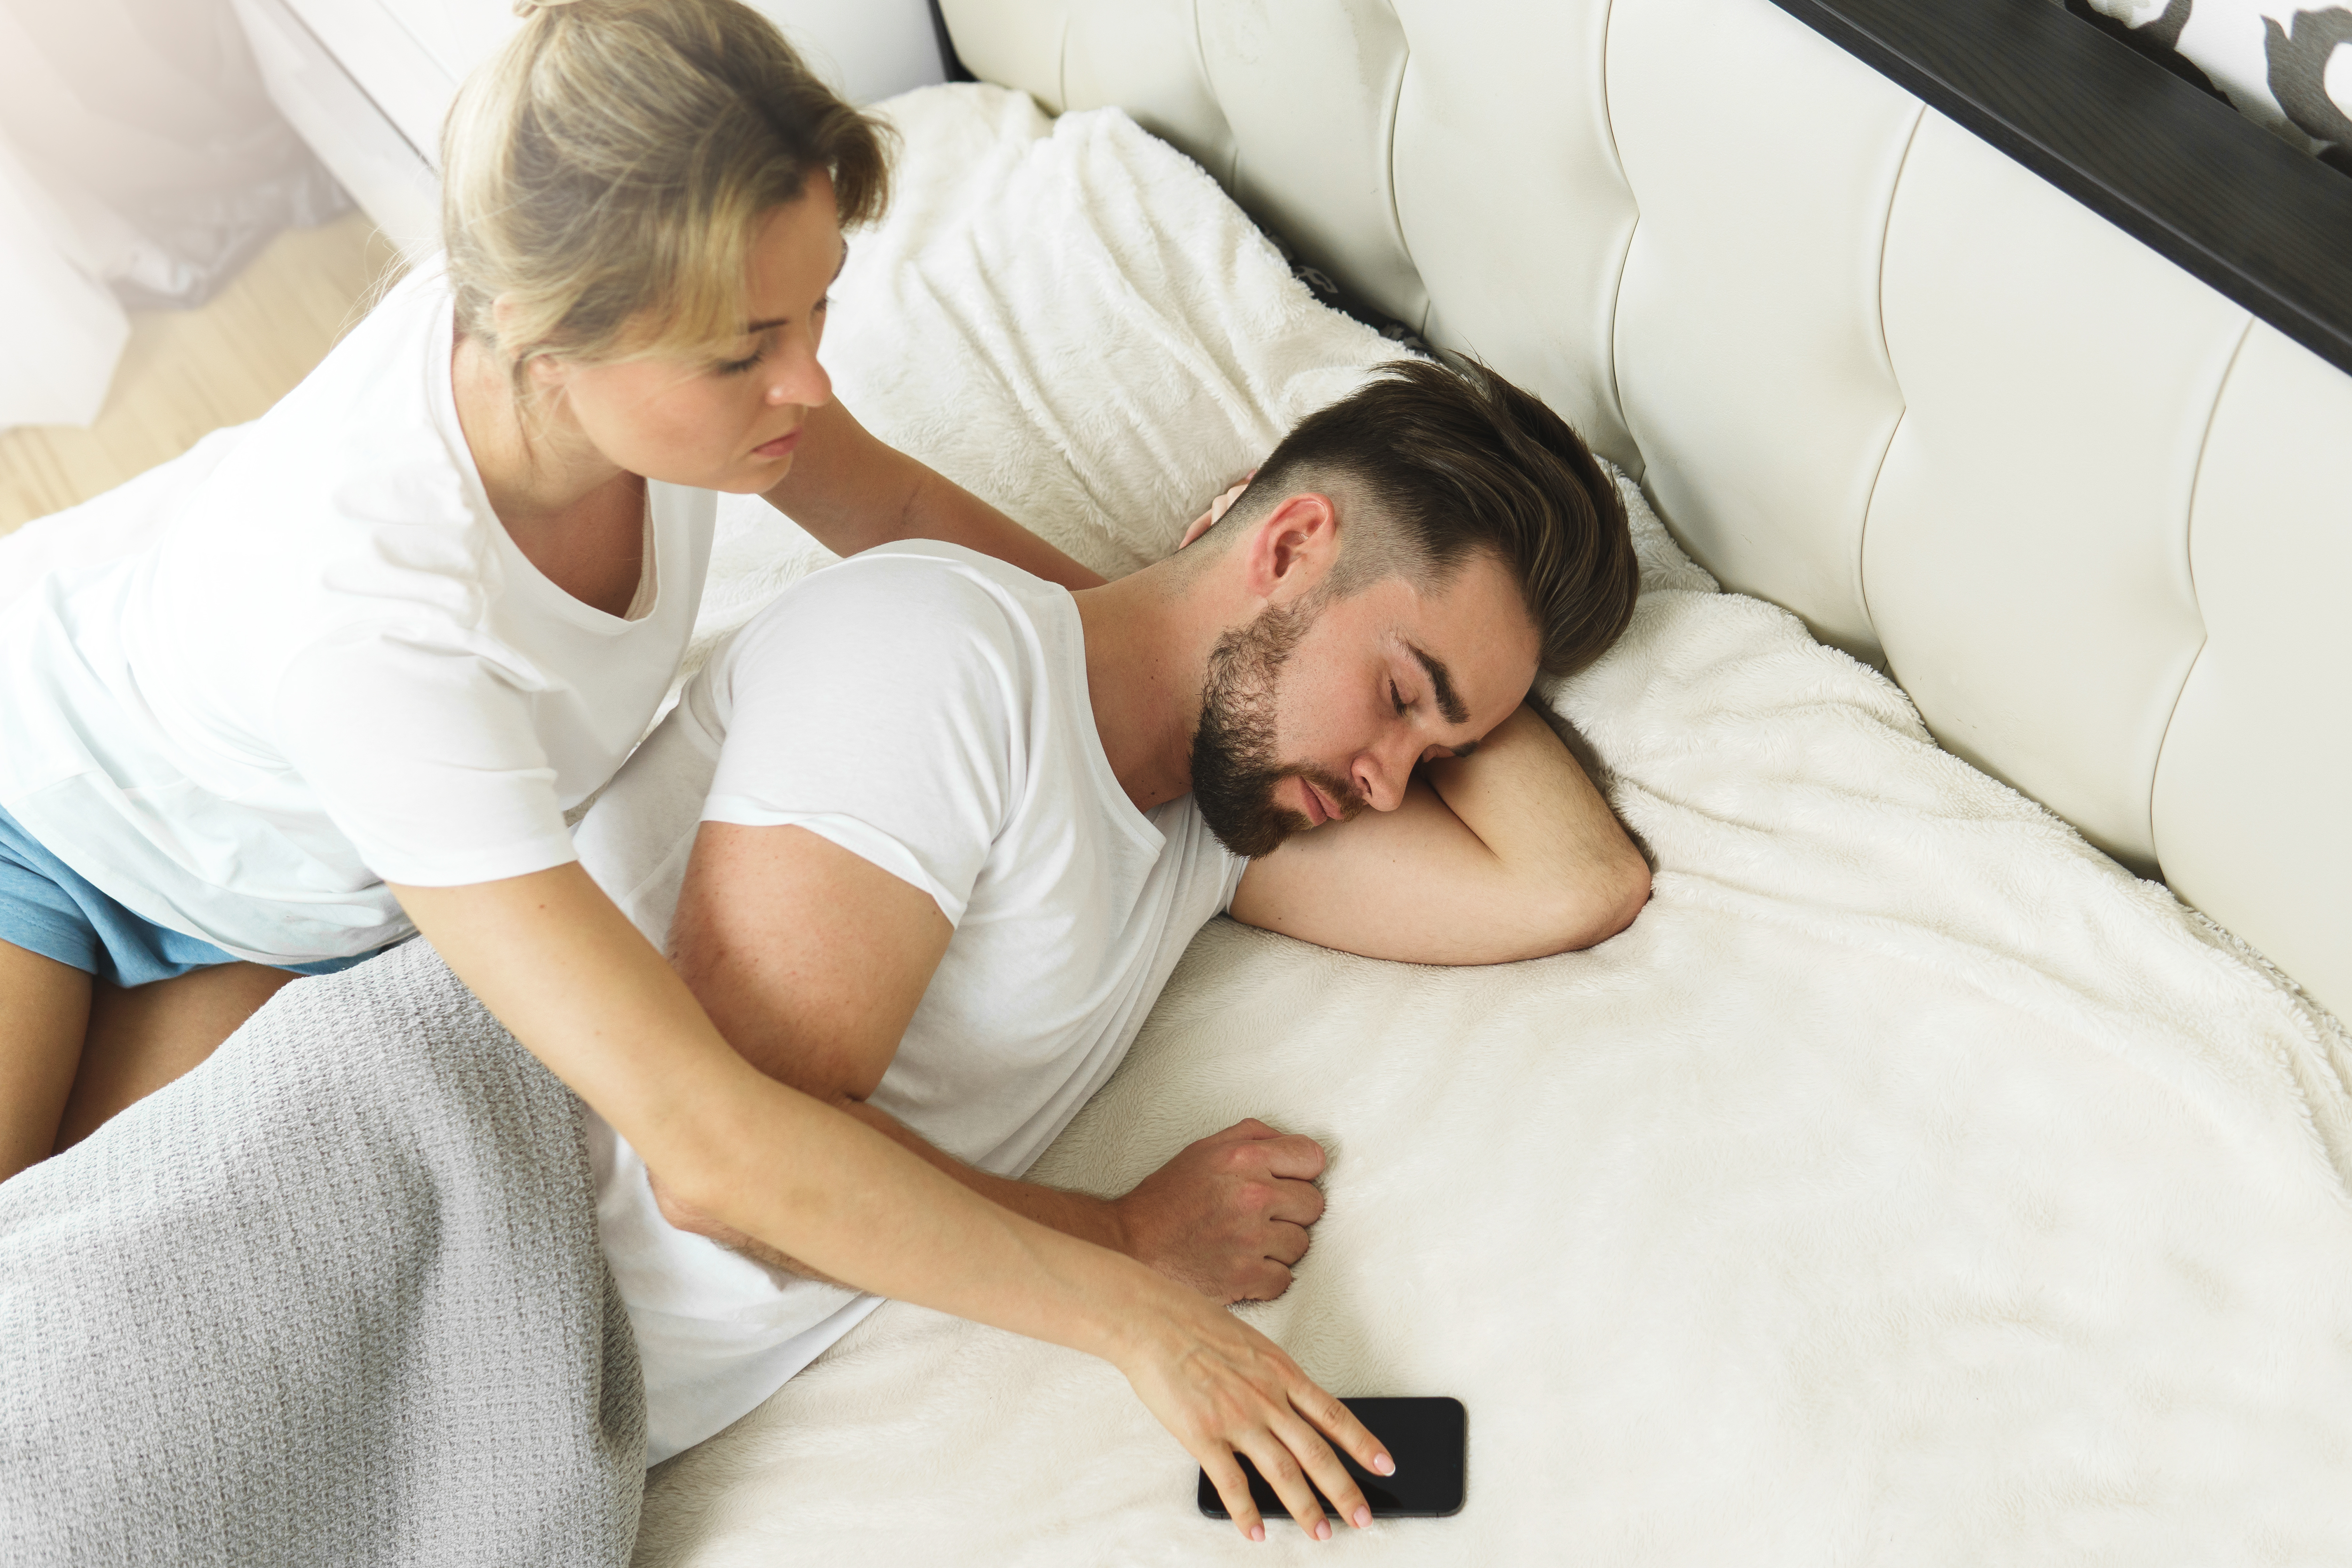 Eine Frau, die versucht, ihrem Partner das Telefon wegzunehmen, während er schläft | Quelle: Shutterstock